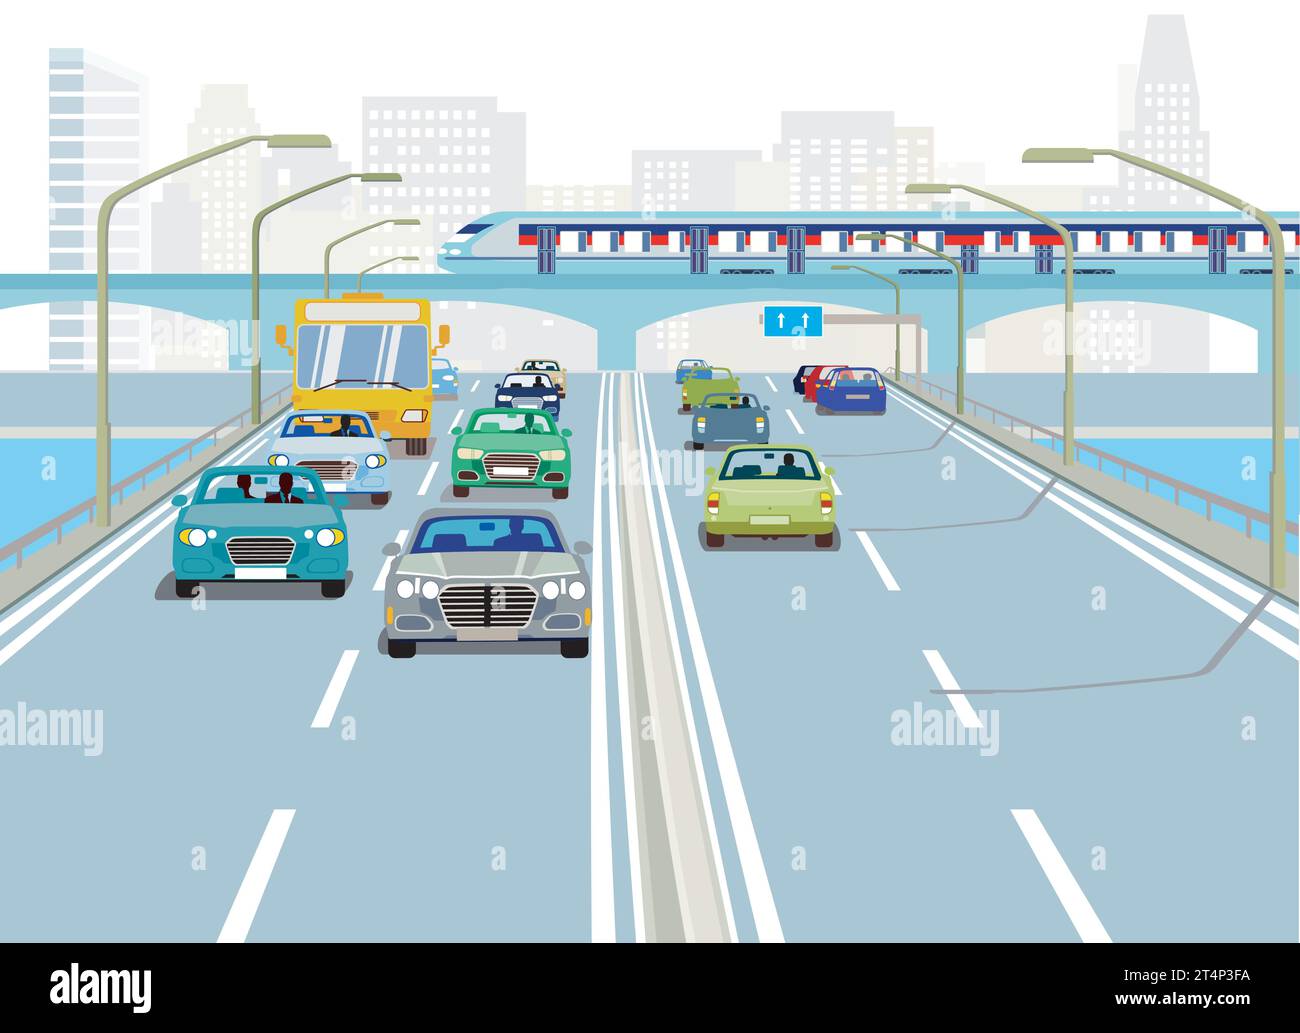 Autobahn mit Lkw und Pkw, Illustration Stock Vektor